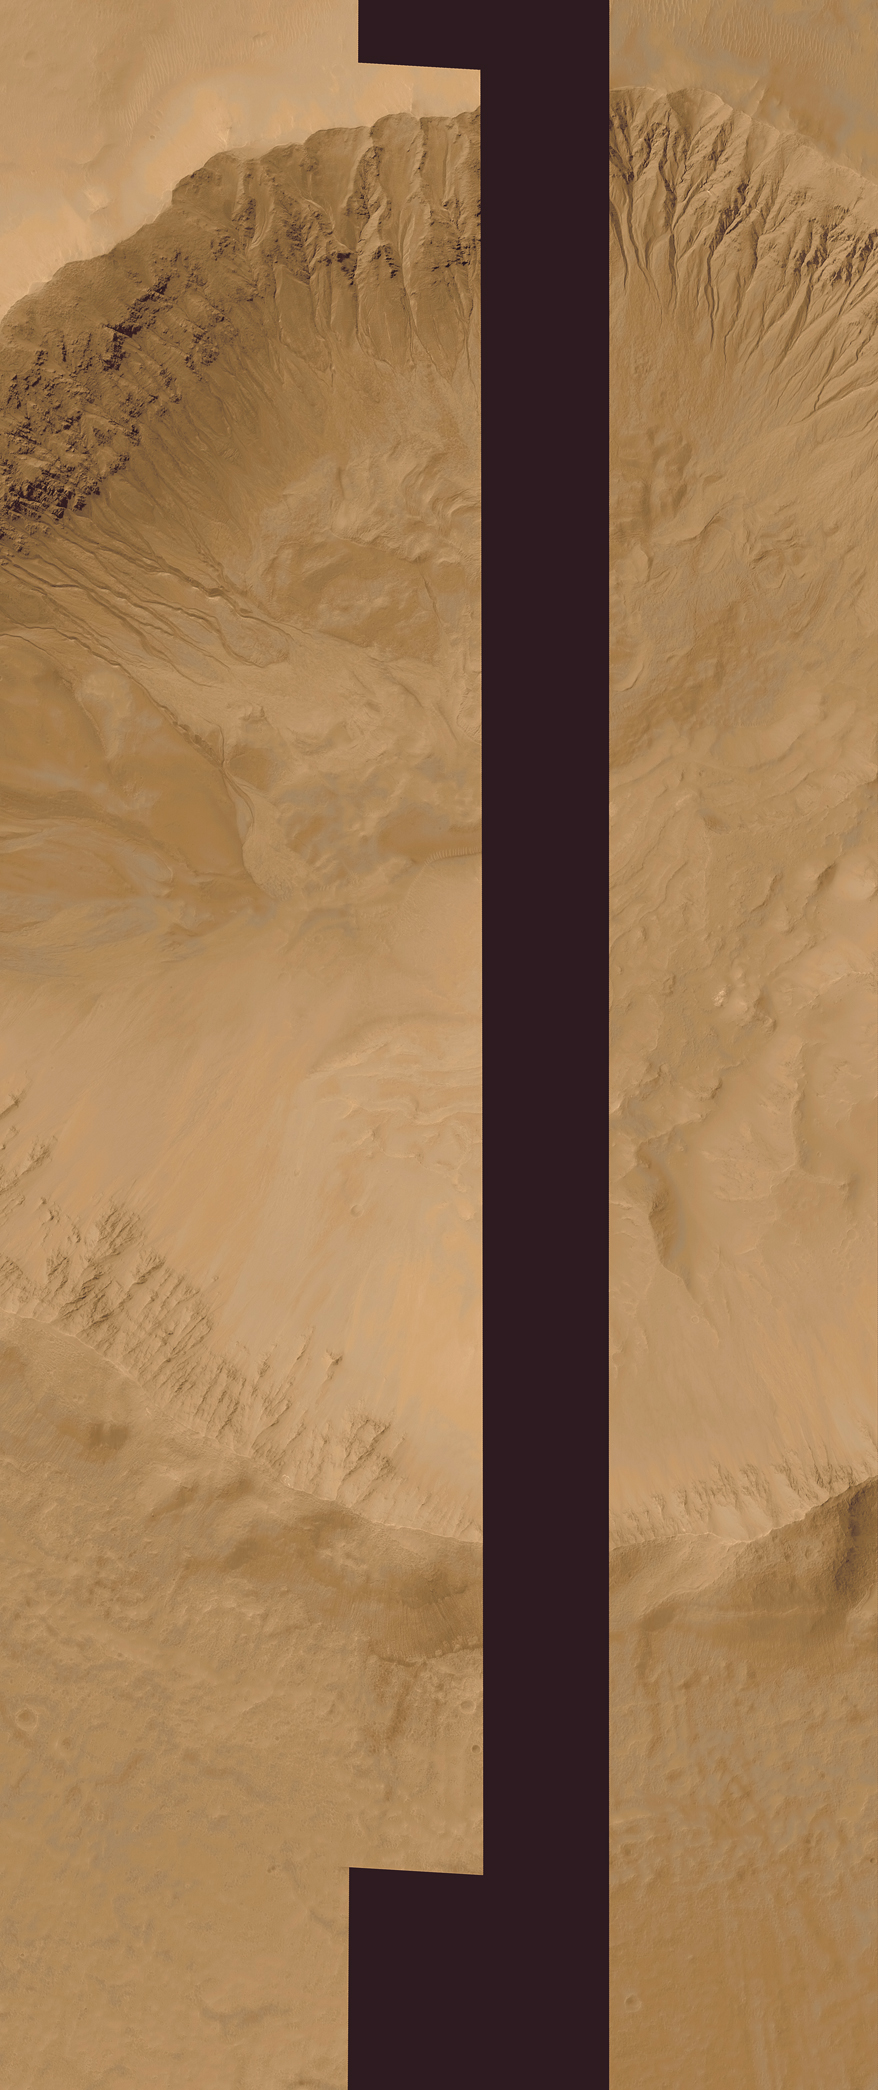 Mars Pics 878x2090 pixels